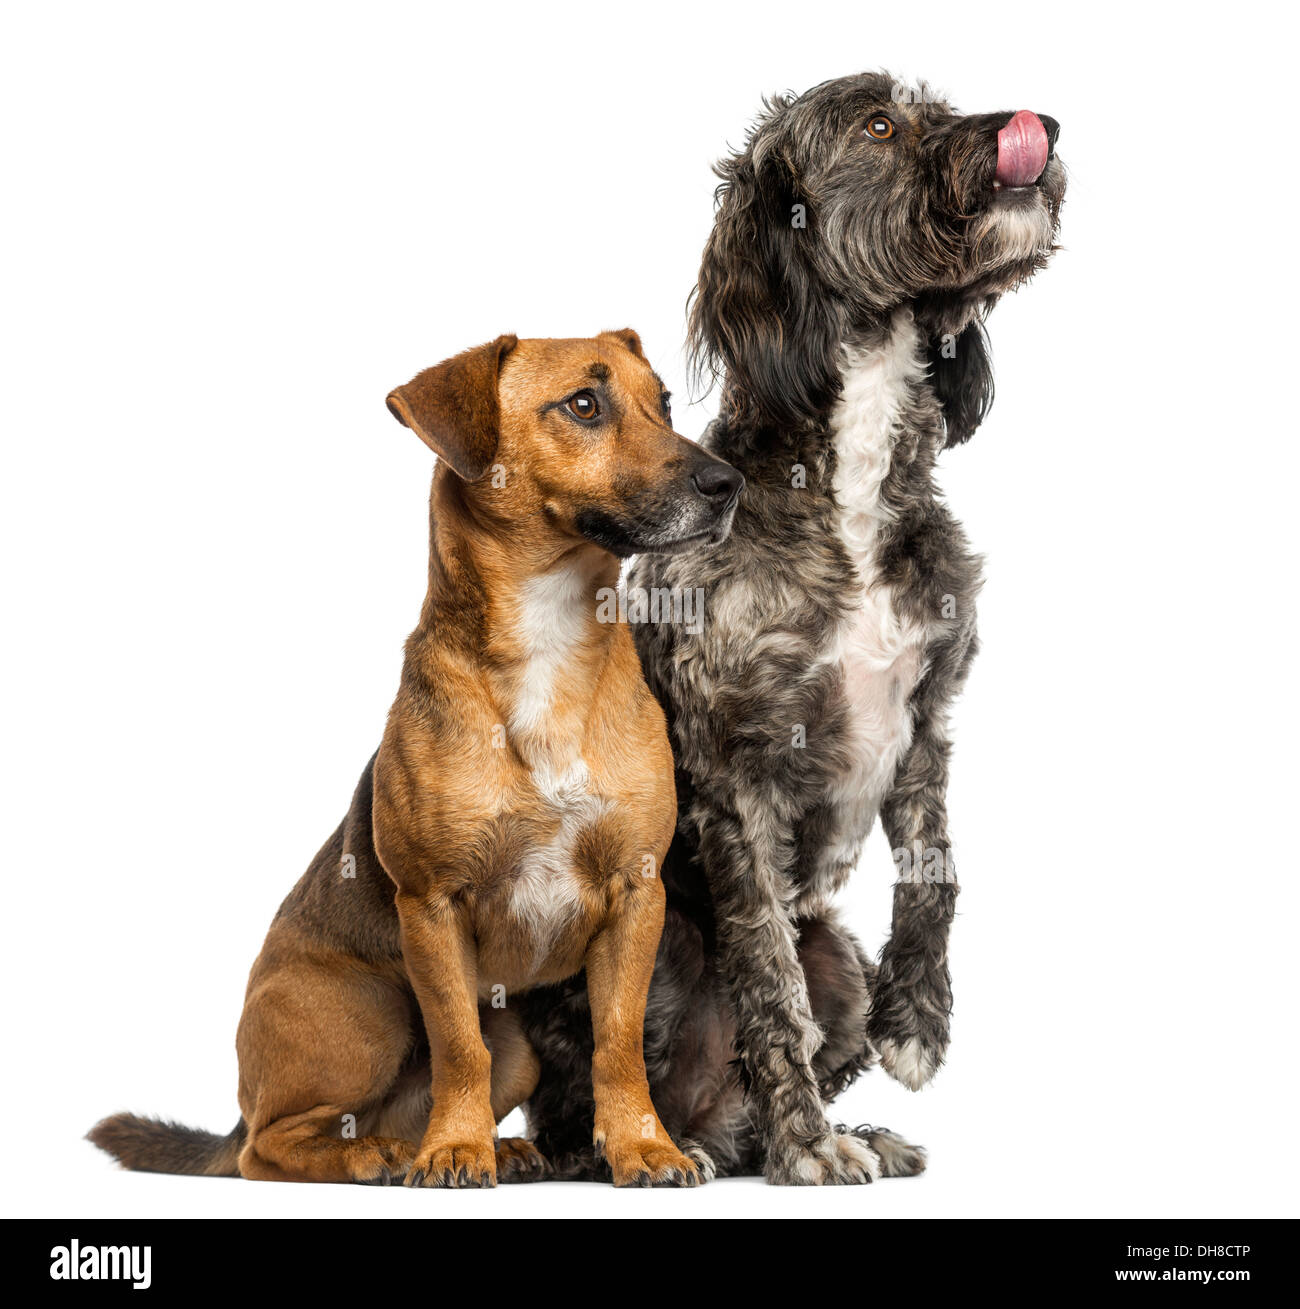 Brittany Briard incroci di cane e Jack Russell seduti insieme contro uno sfondo bianco Foto Stock